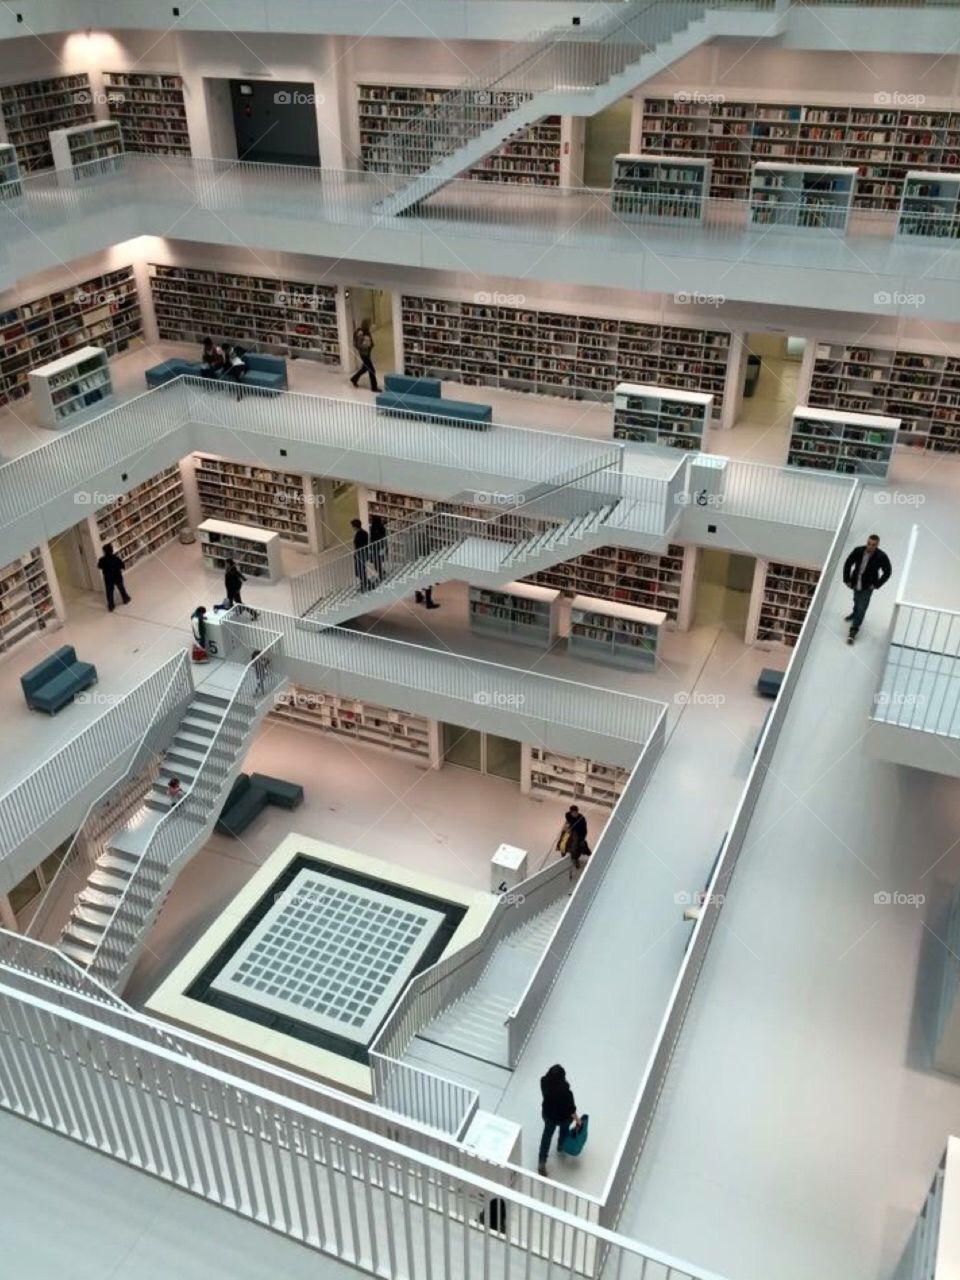 Library im Stuttgart, Germany